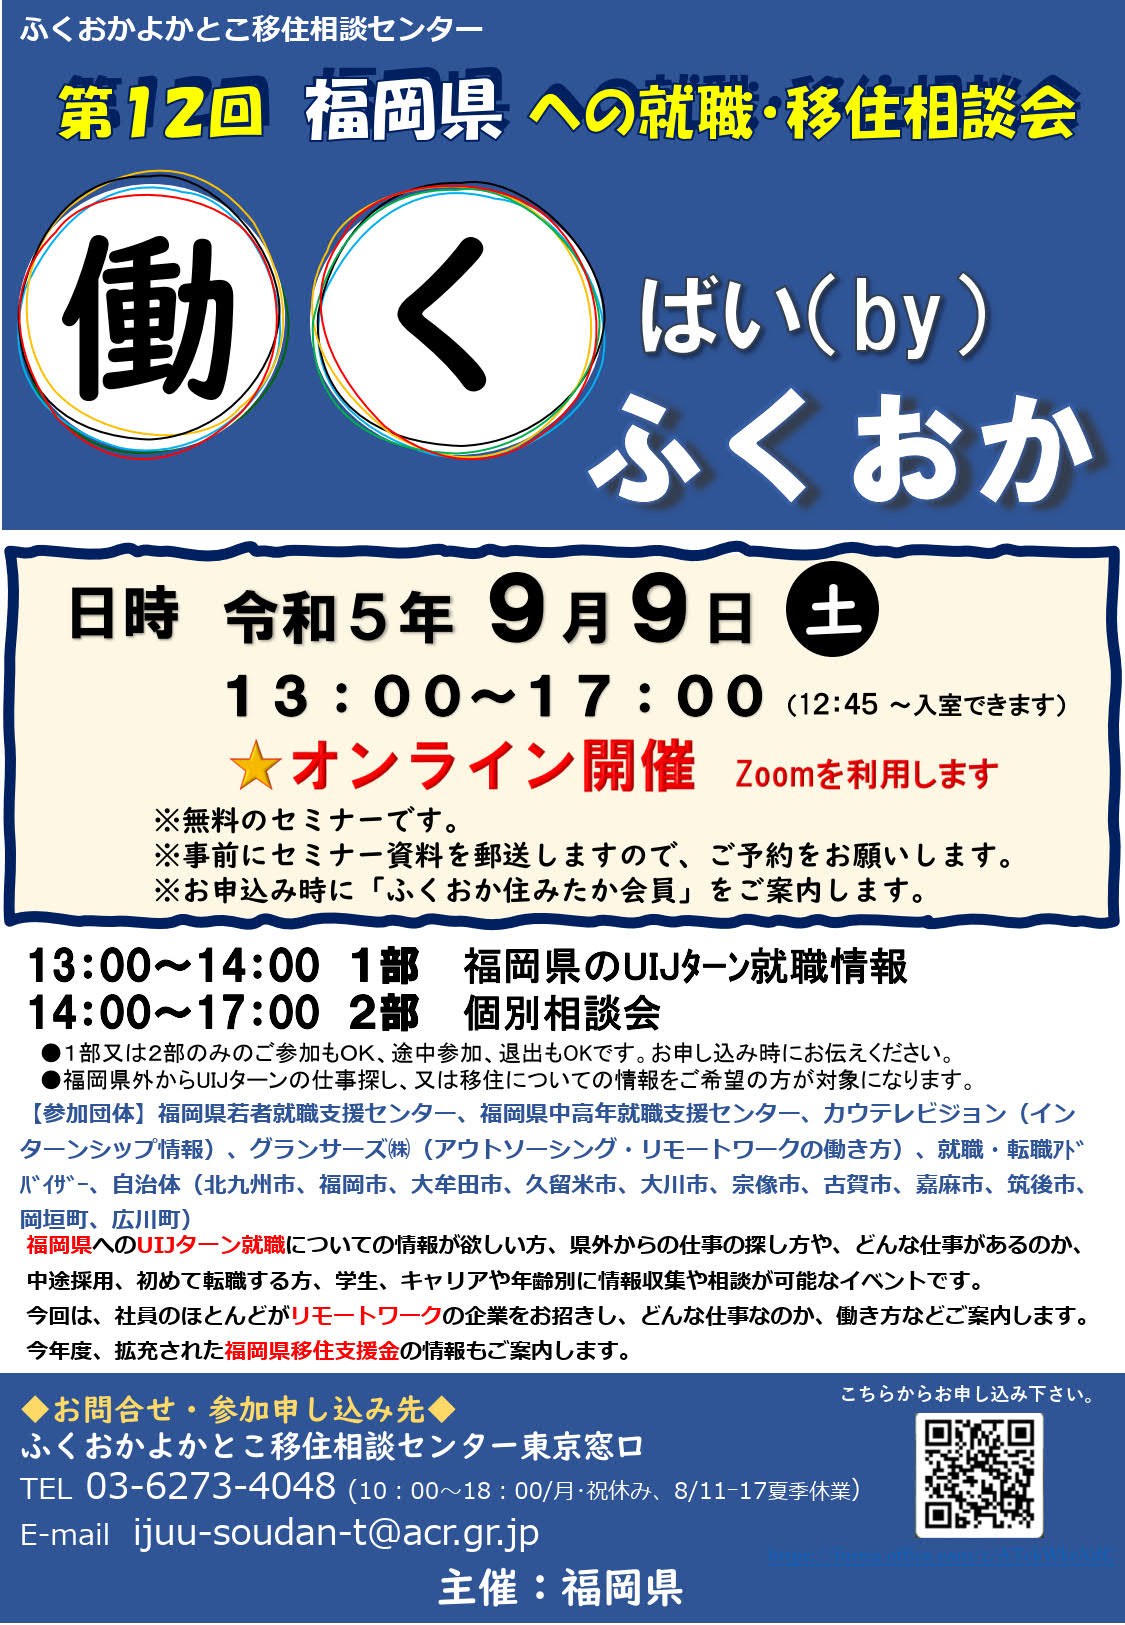 第12回福岡県への就職・移住相談会「働くばい（by）ふくおか」 | 移住関連イベント情報